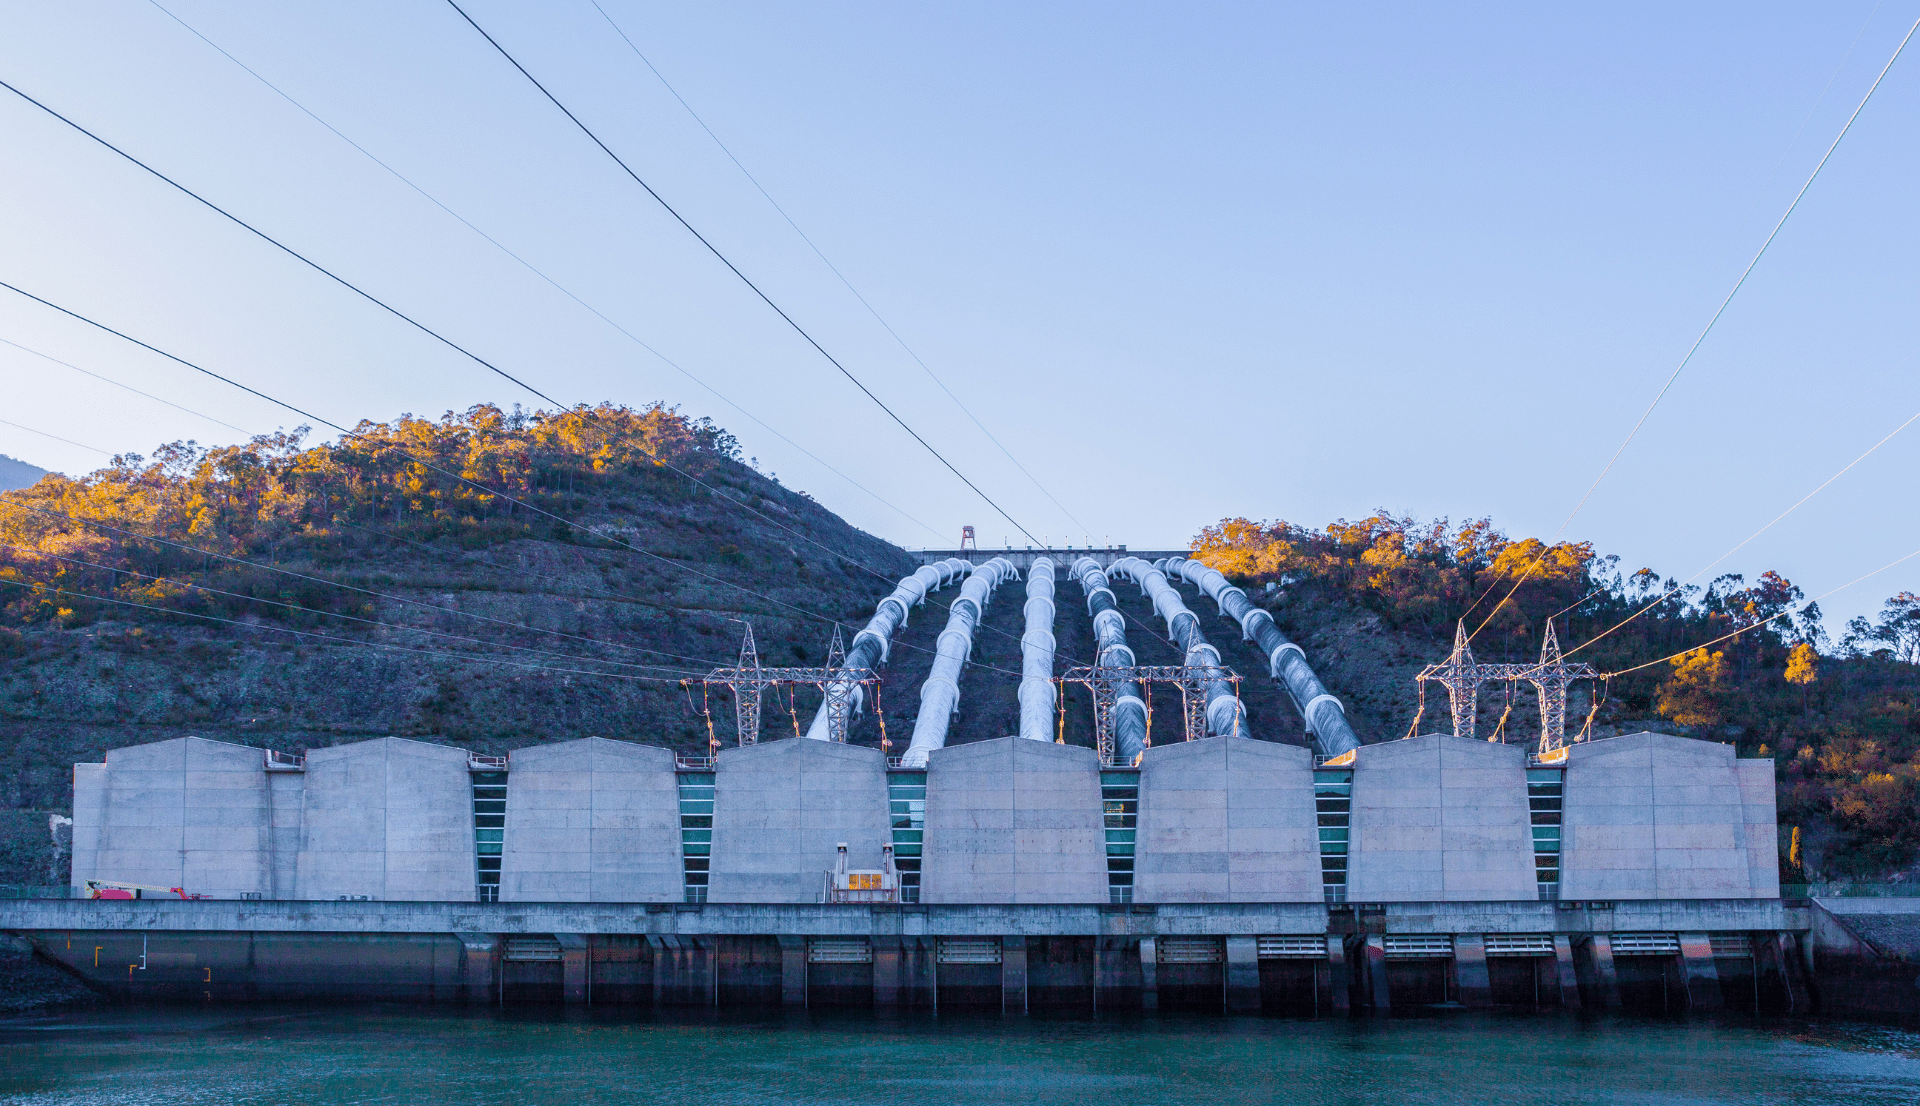 Tumut Hydro Power Station